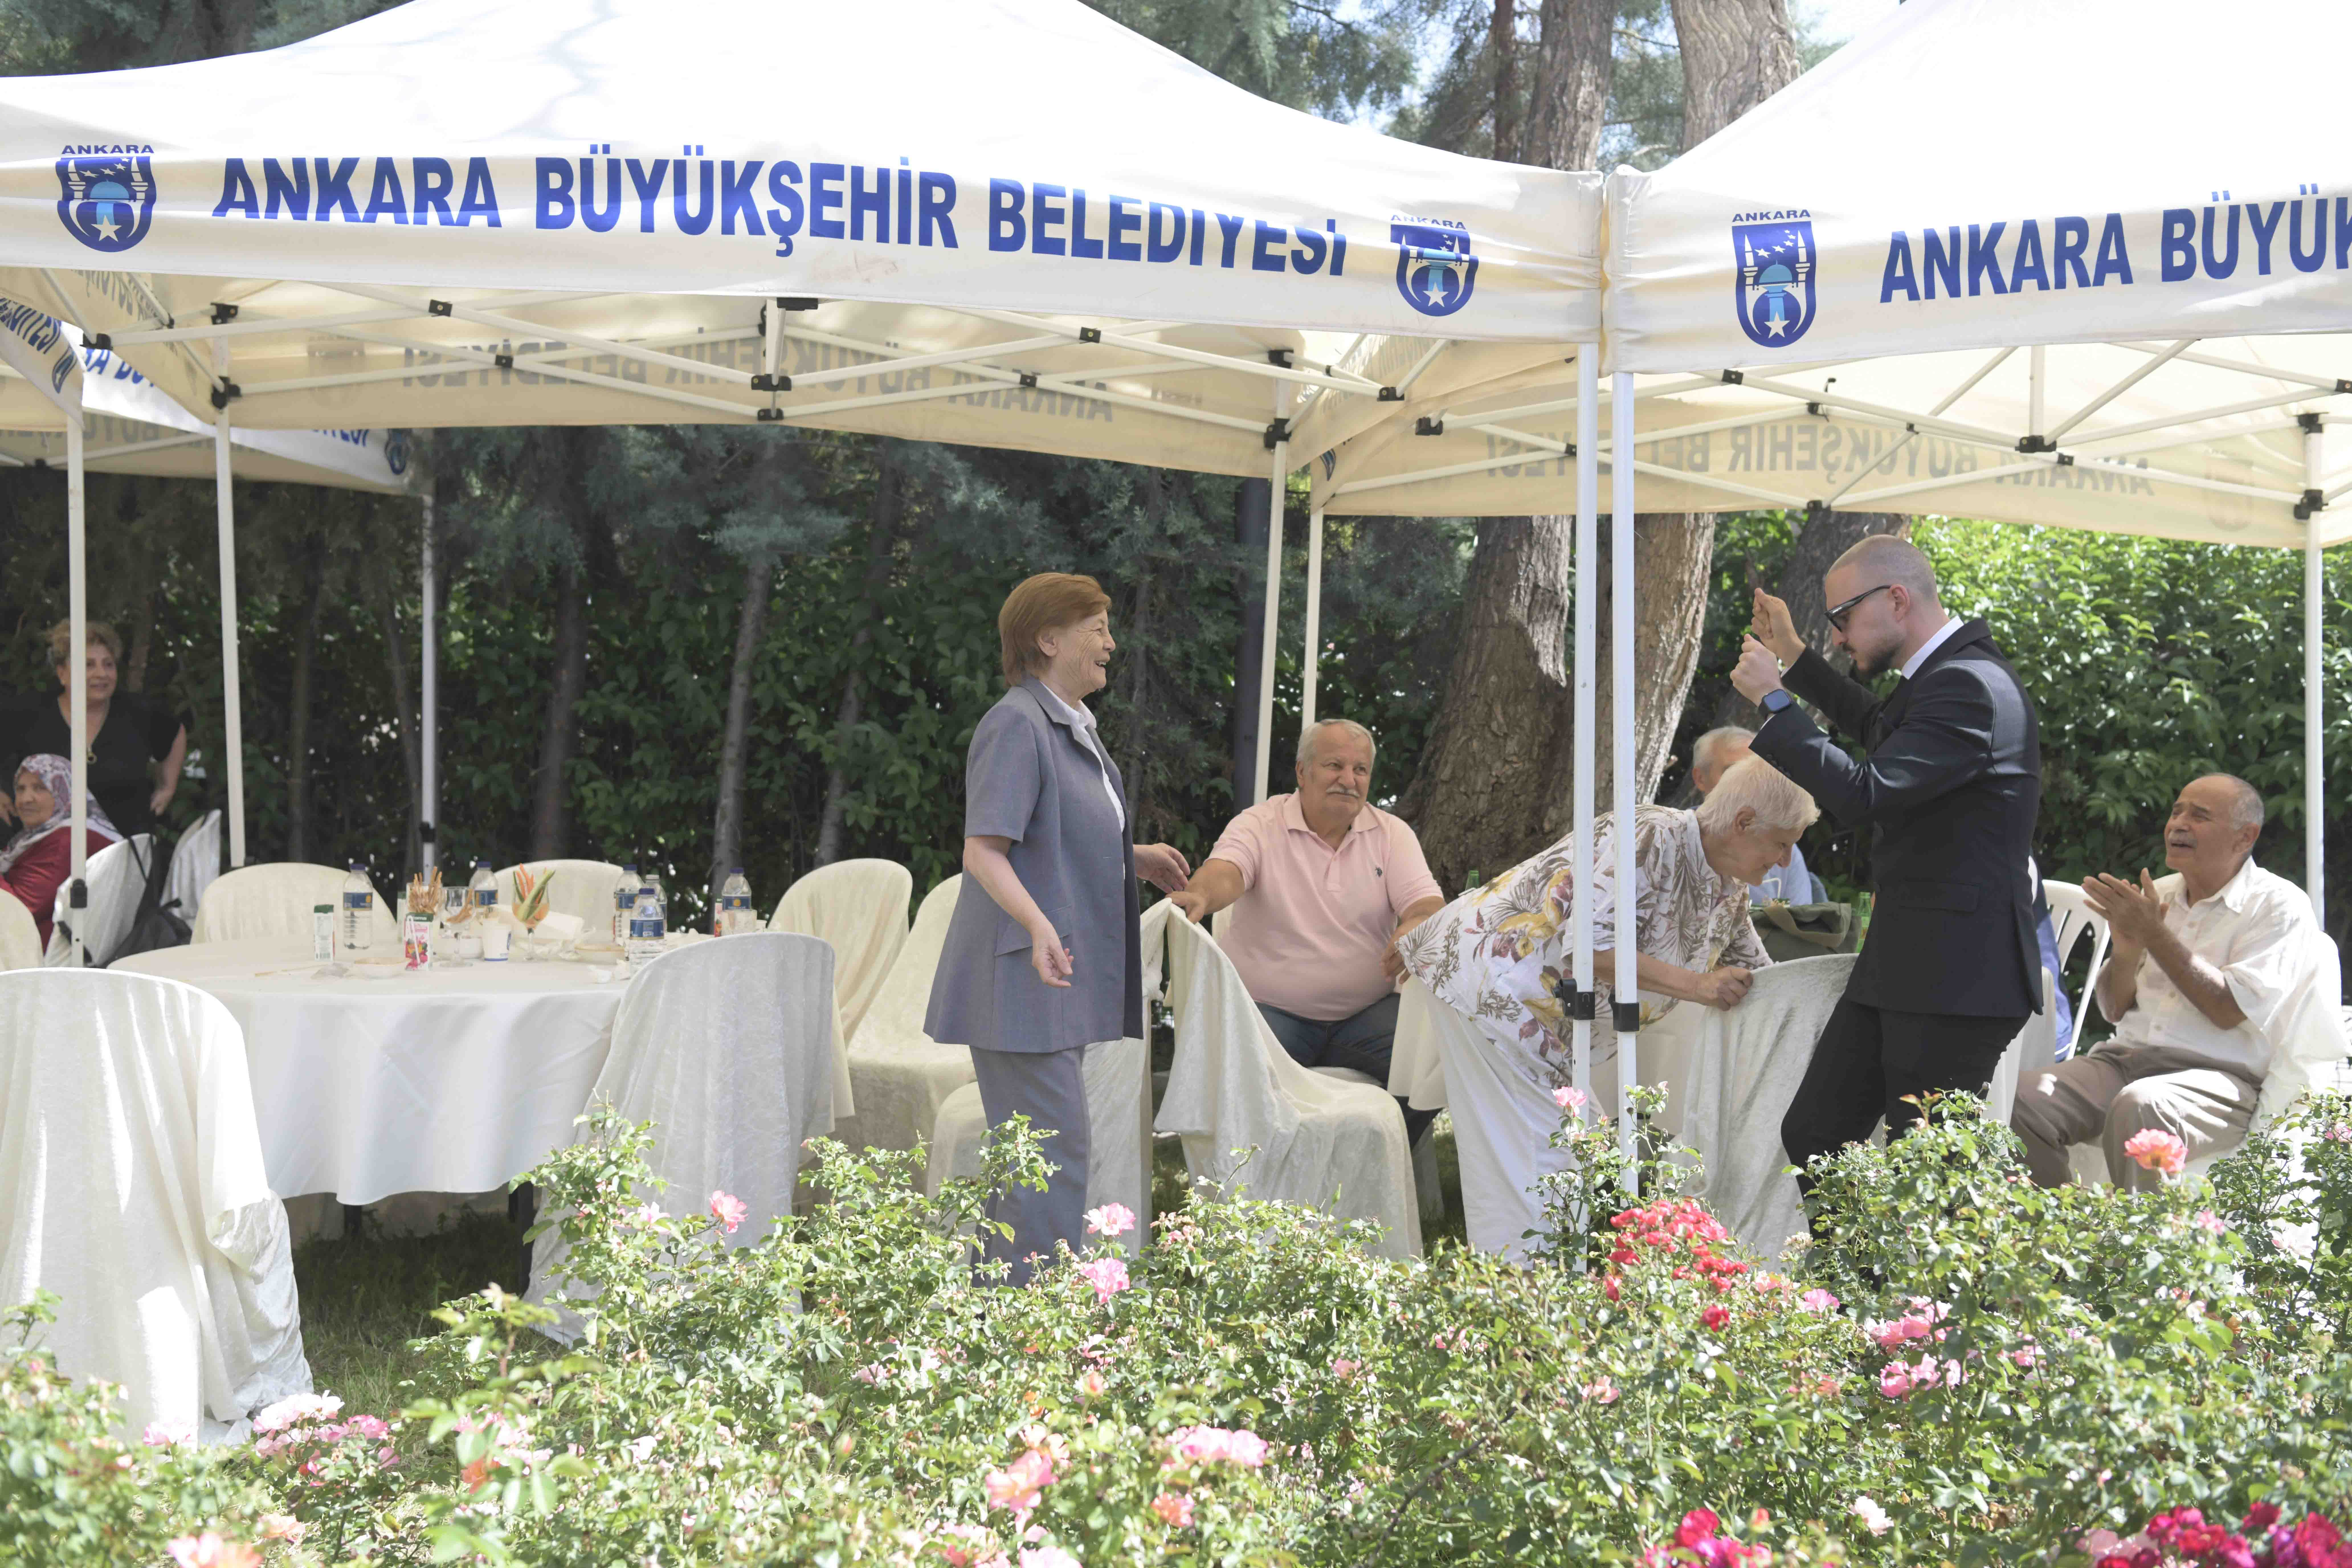 Ankara Büyükşehir Belediyesi’nden Dünya Alzheimer Günü farkındalık etkinliği